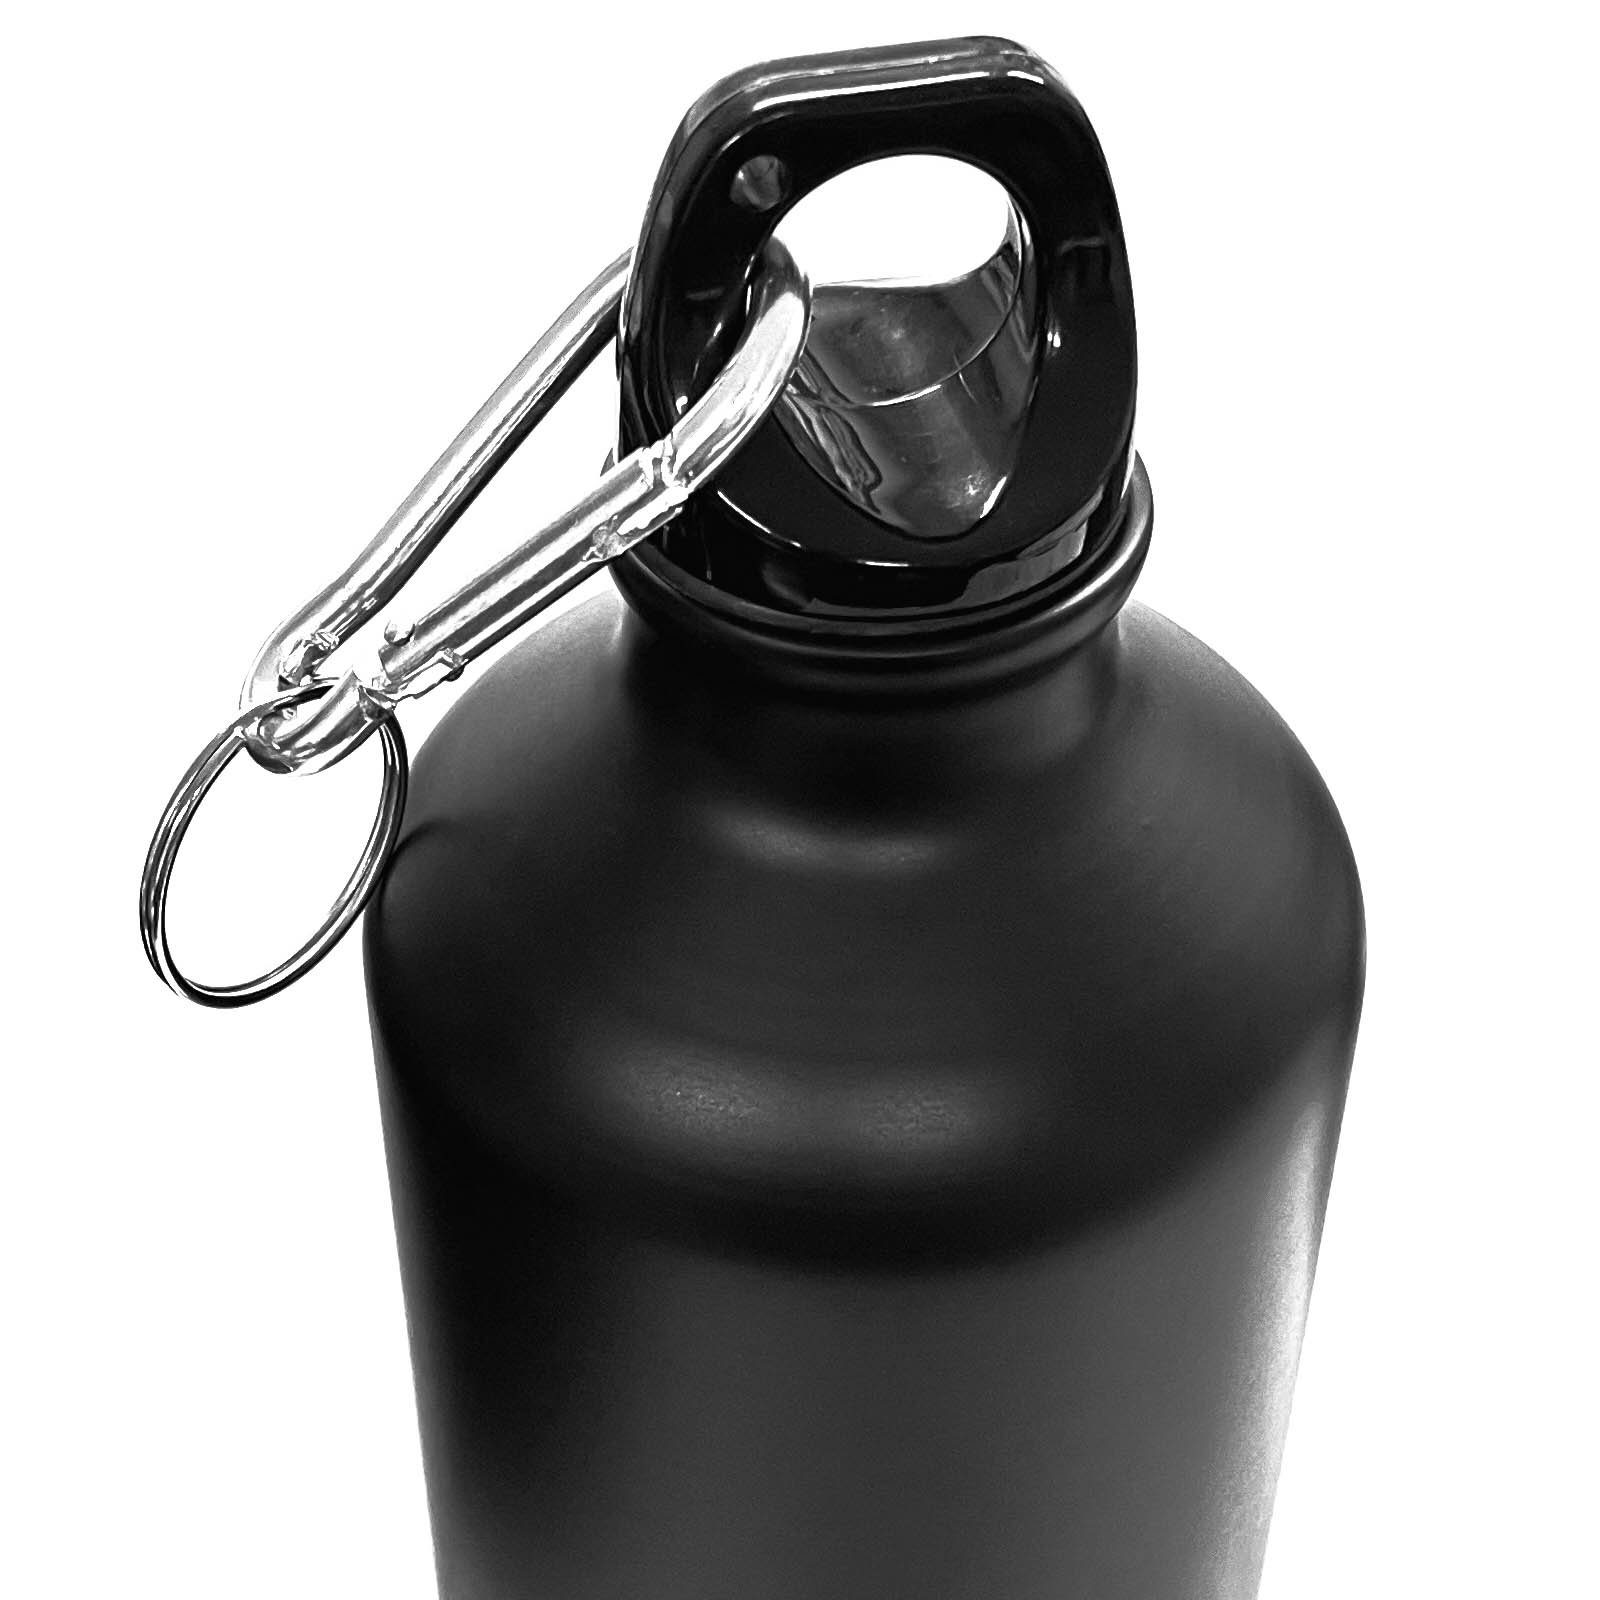 HAC24 Trinkflasche Aluminium Alu Wasserflasche Sportflasche 0,75l, fuchsia Aluflasche, Karabiner Fahrradflasche mit